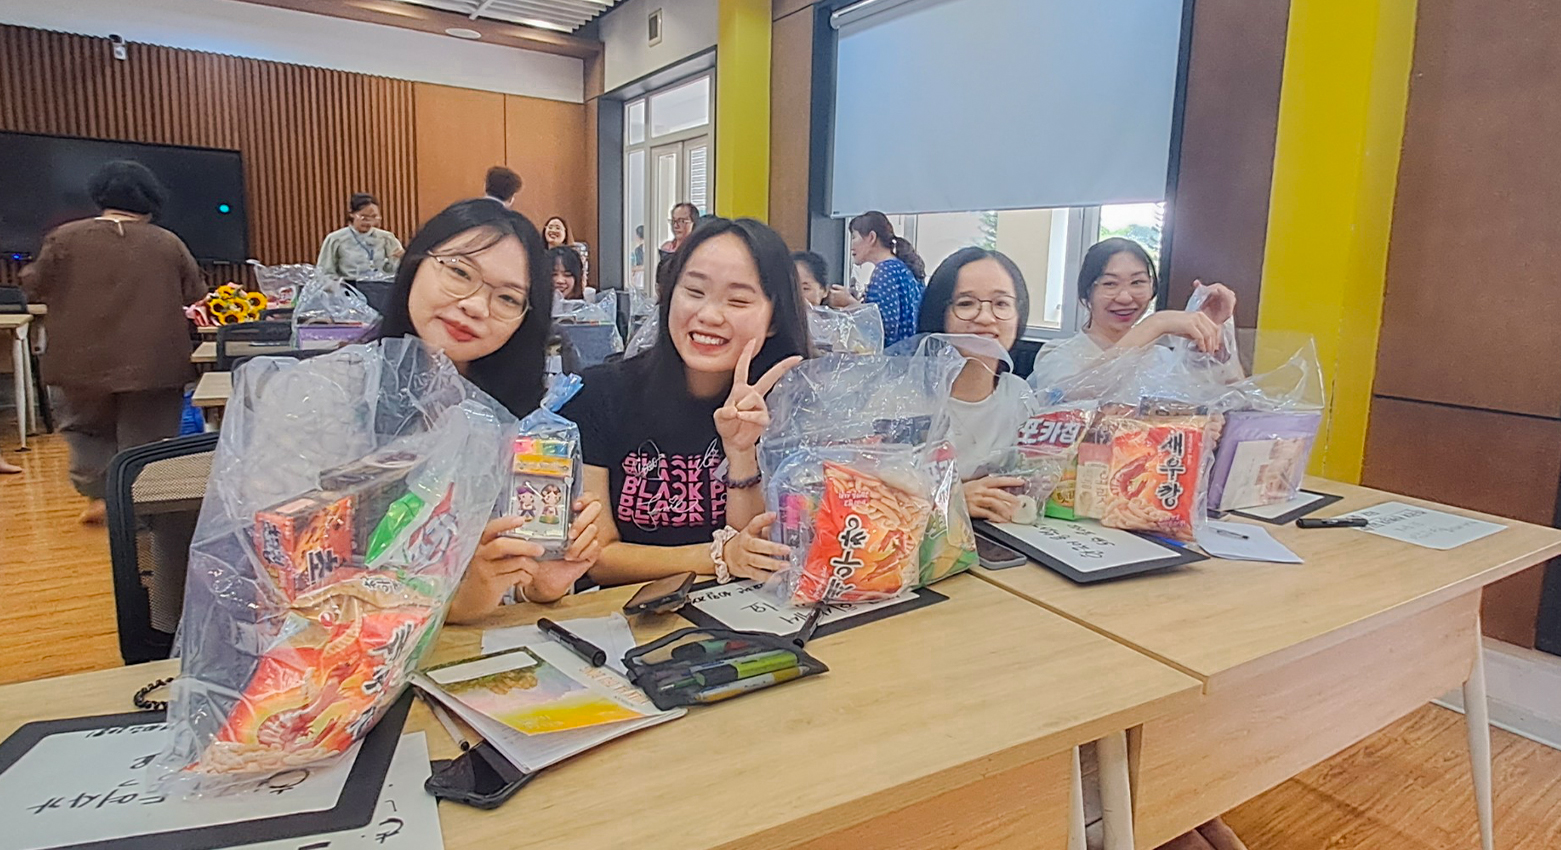 Tiếp đoàn giáo viên thành phố Chong-ju, Hàn Quốc đến thăm và làm việc tại Trường Ngoại ngữ - Du lịch, Trường Đại học Công nghiệp Hà Nội